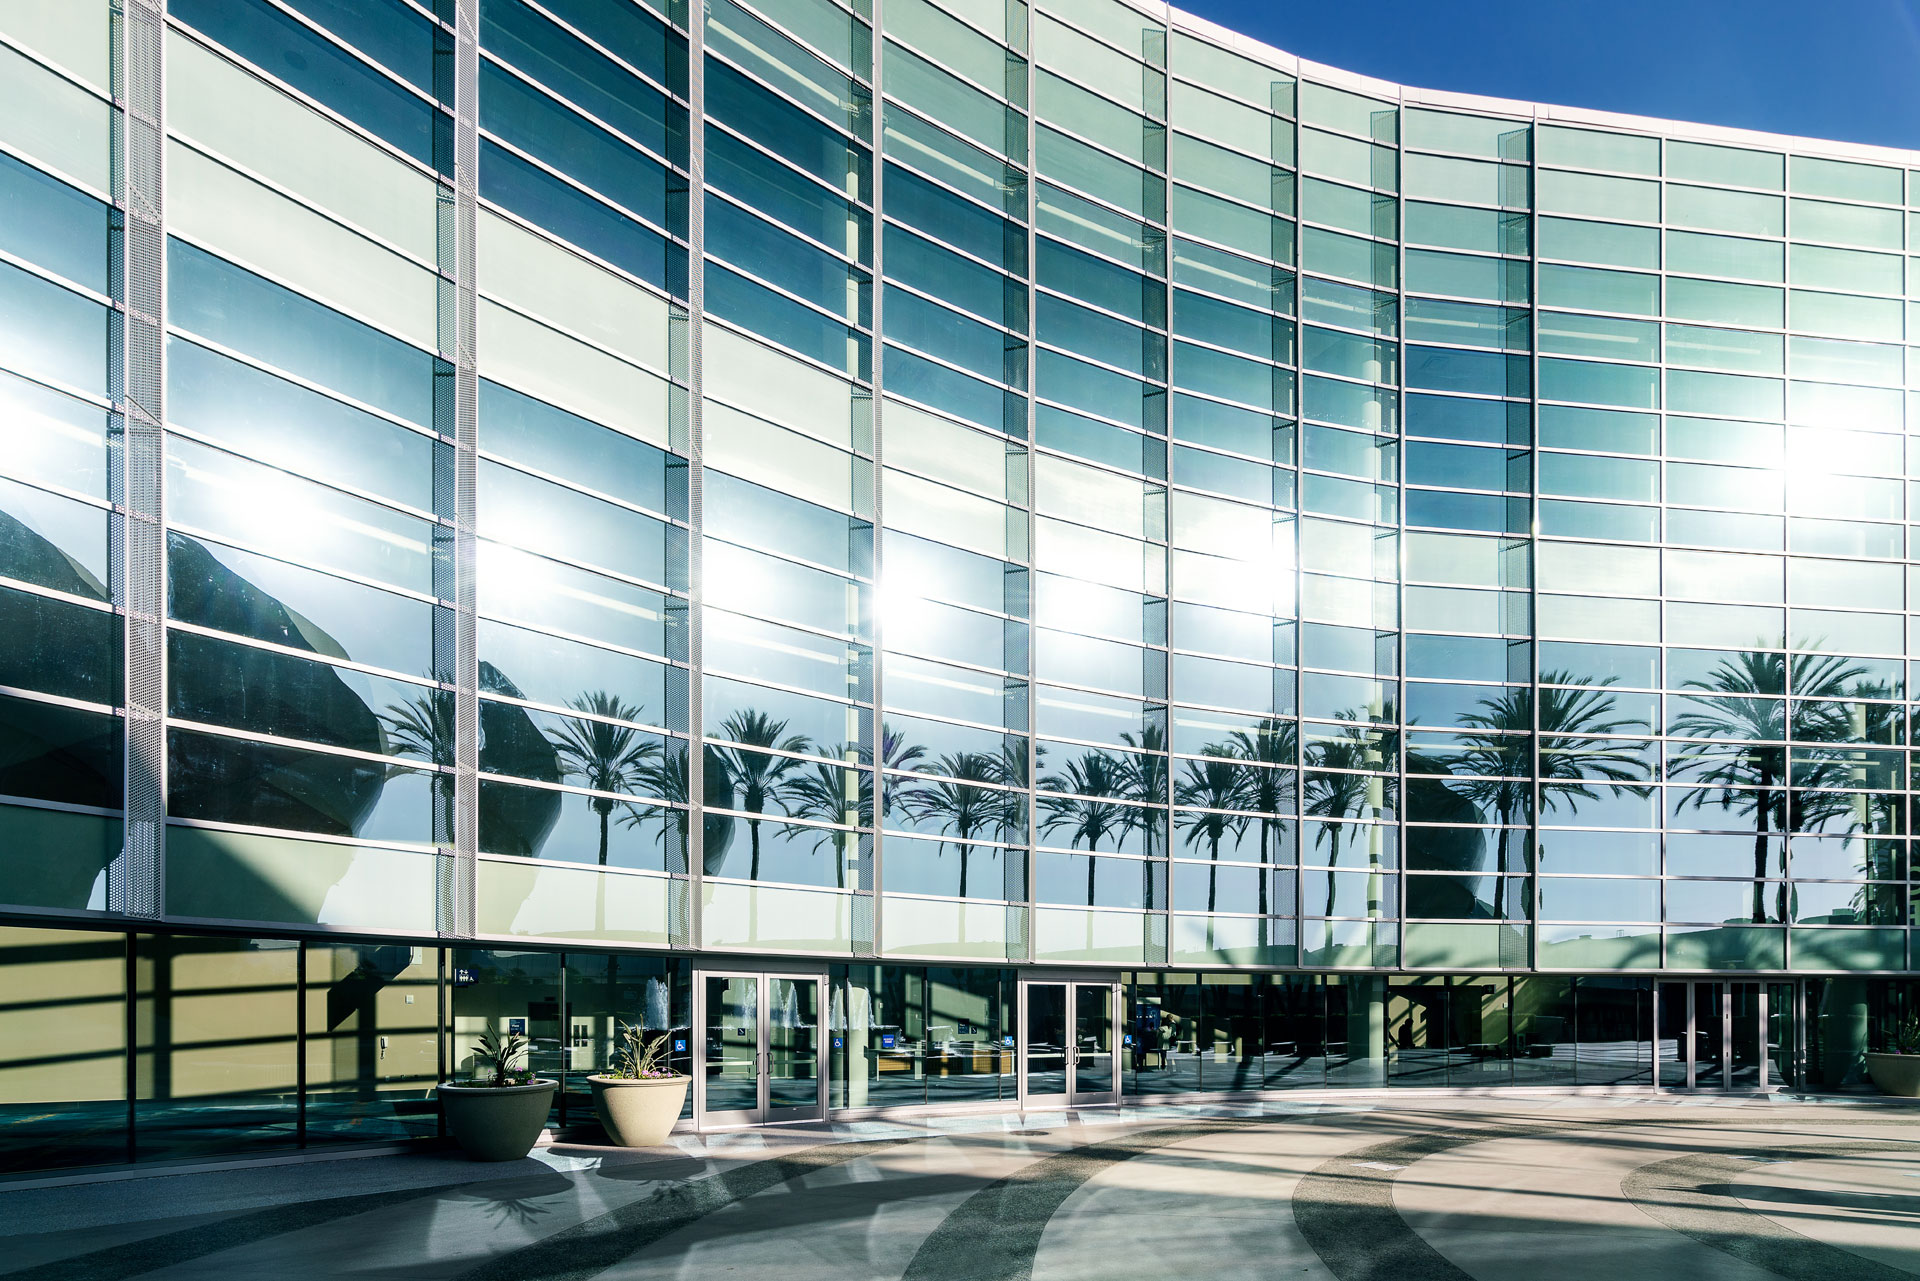 The Anaheim Convention Center